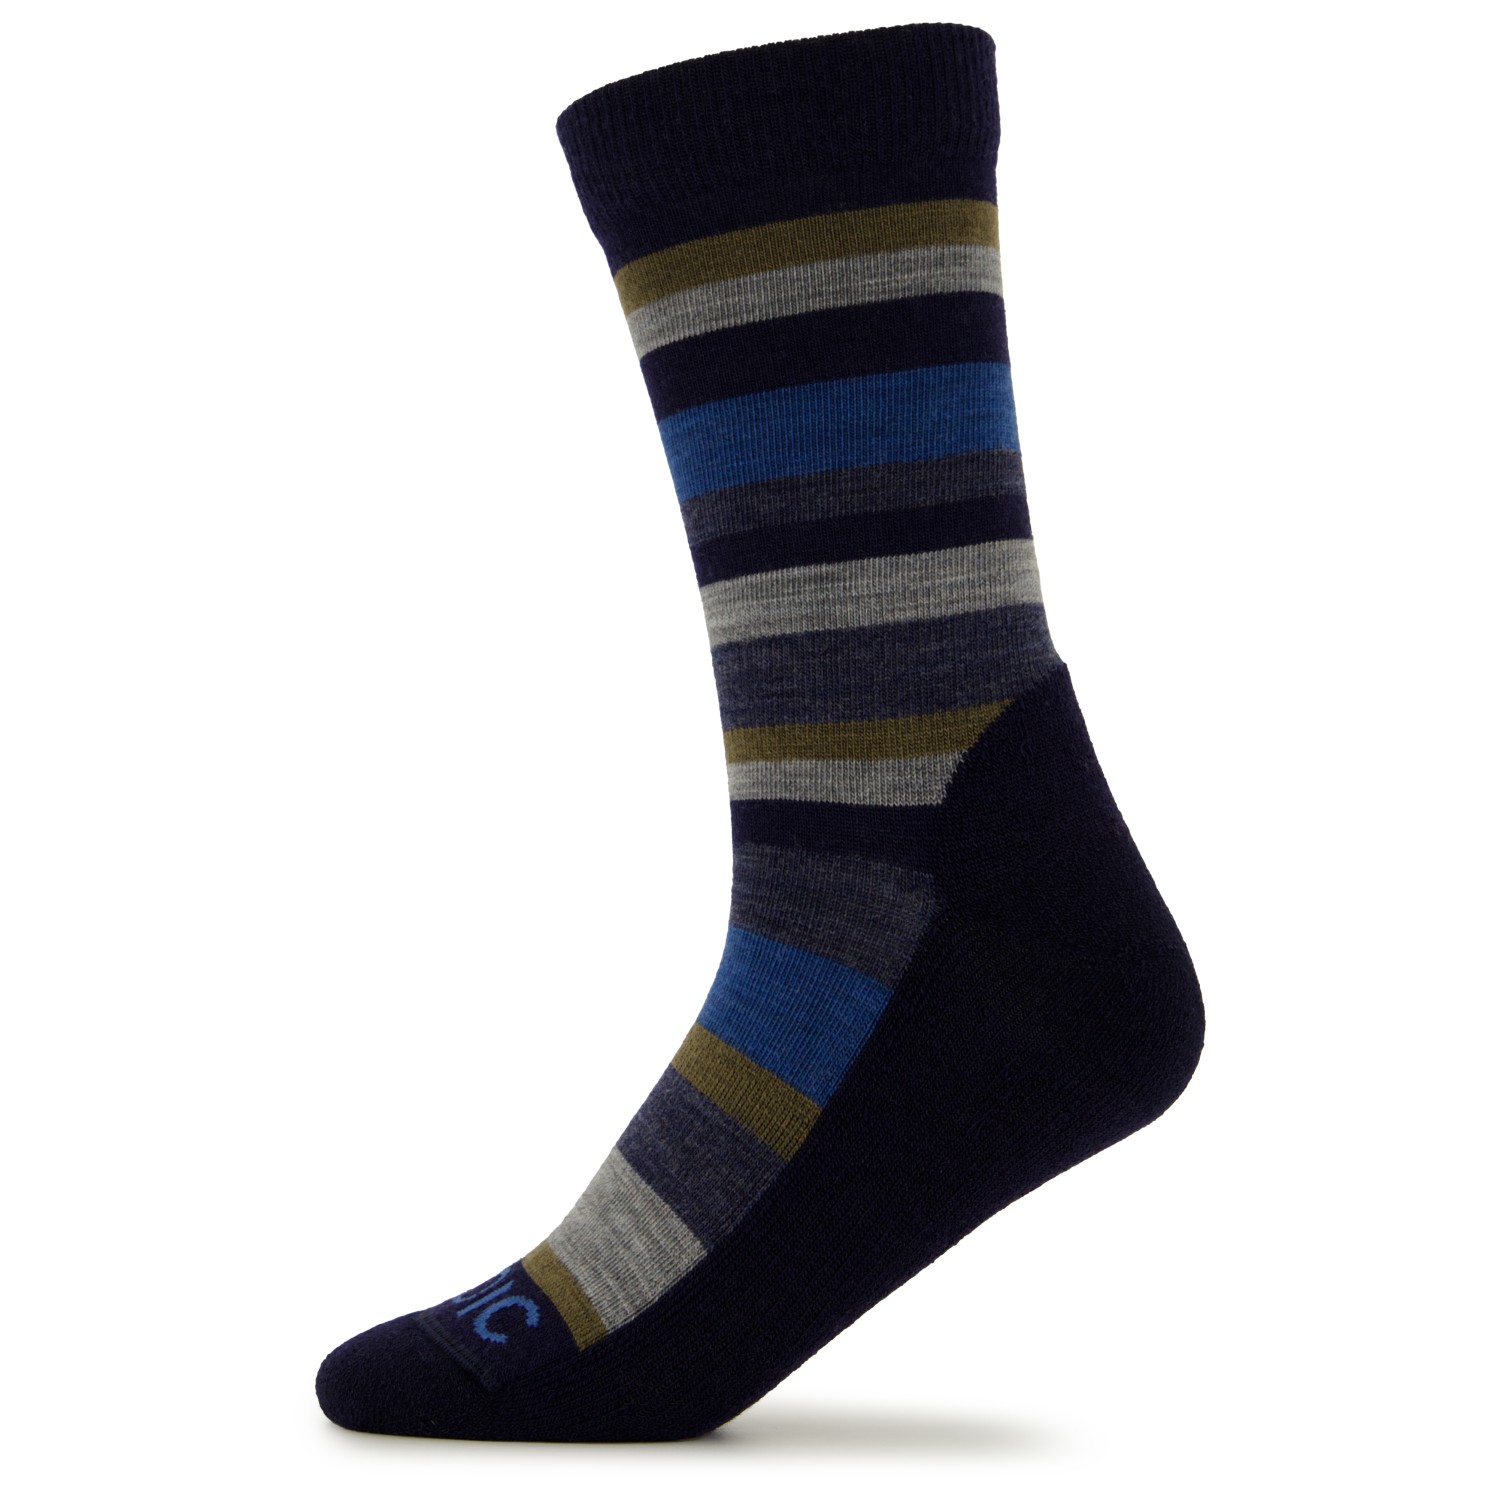 Походные носки Stoic Merino Trekking Crew Socks Stripes, цвет Navy/Olive